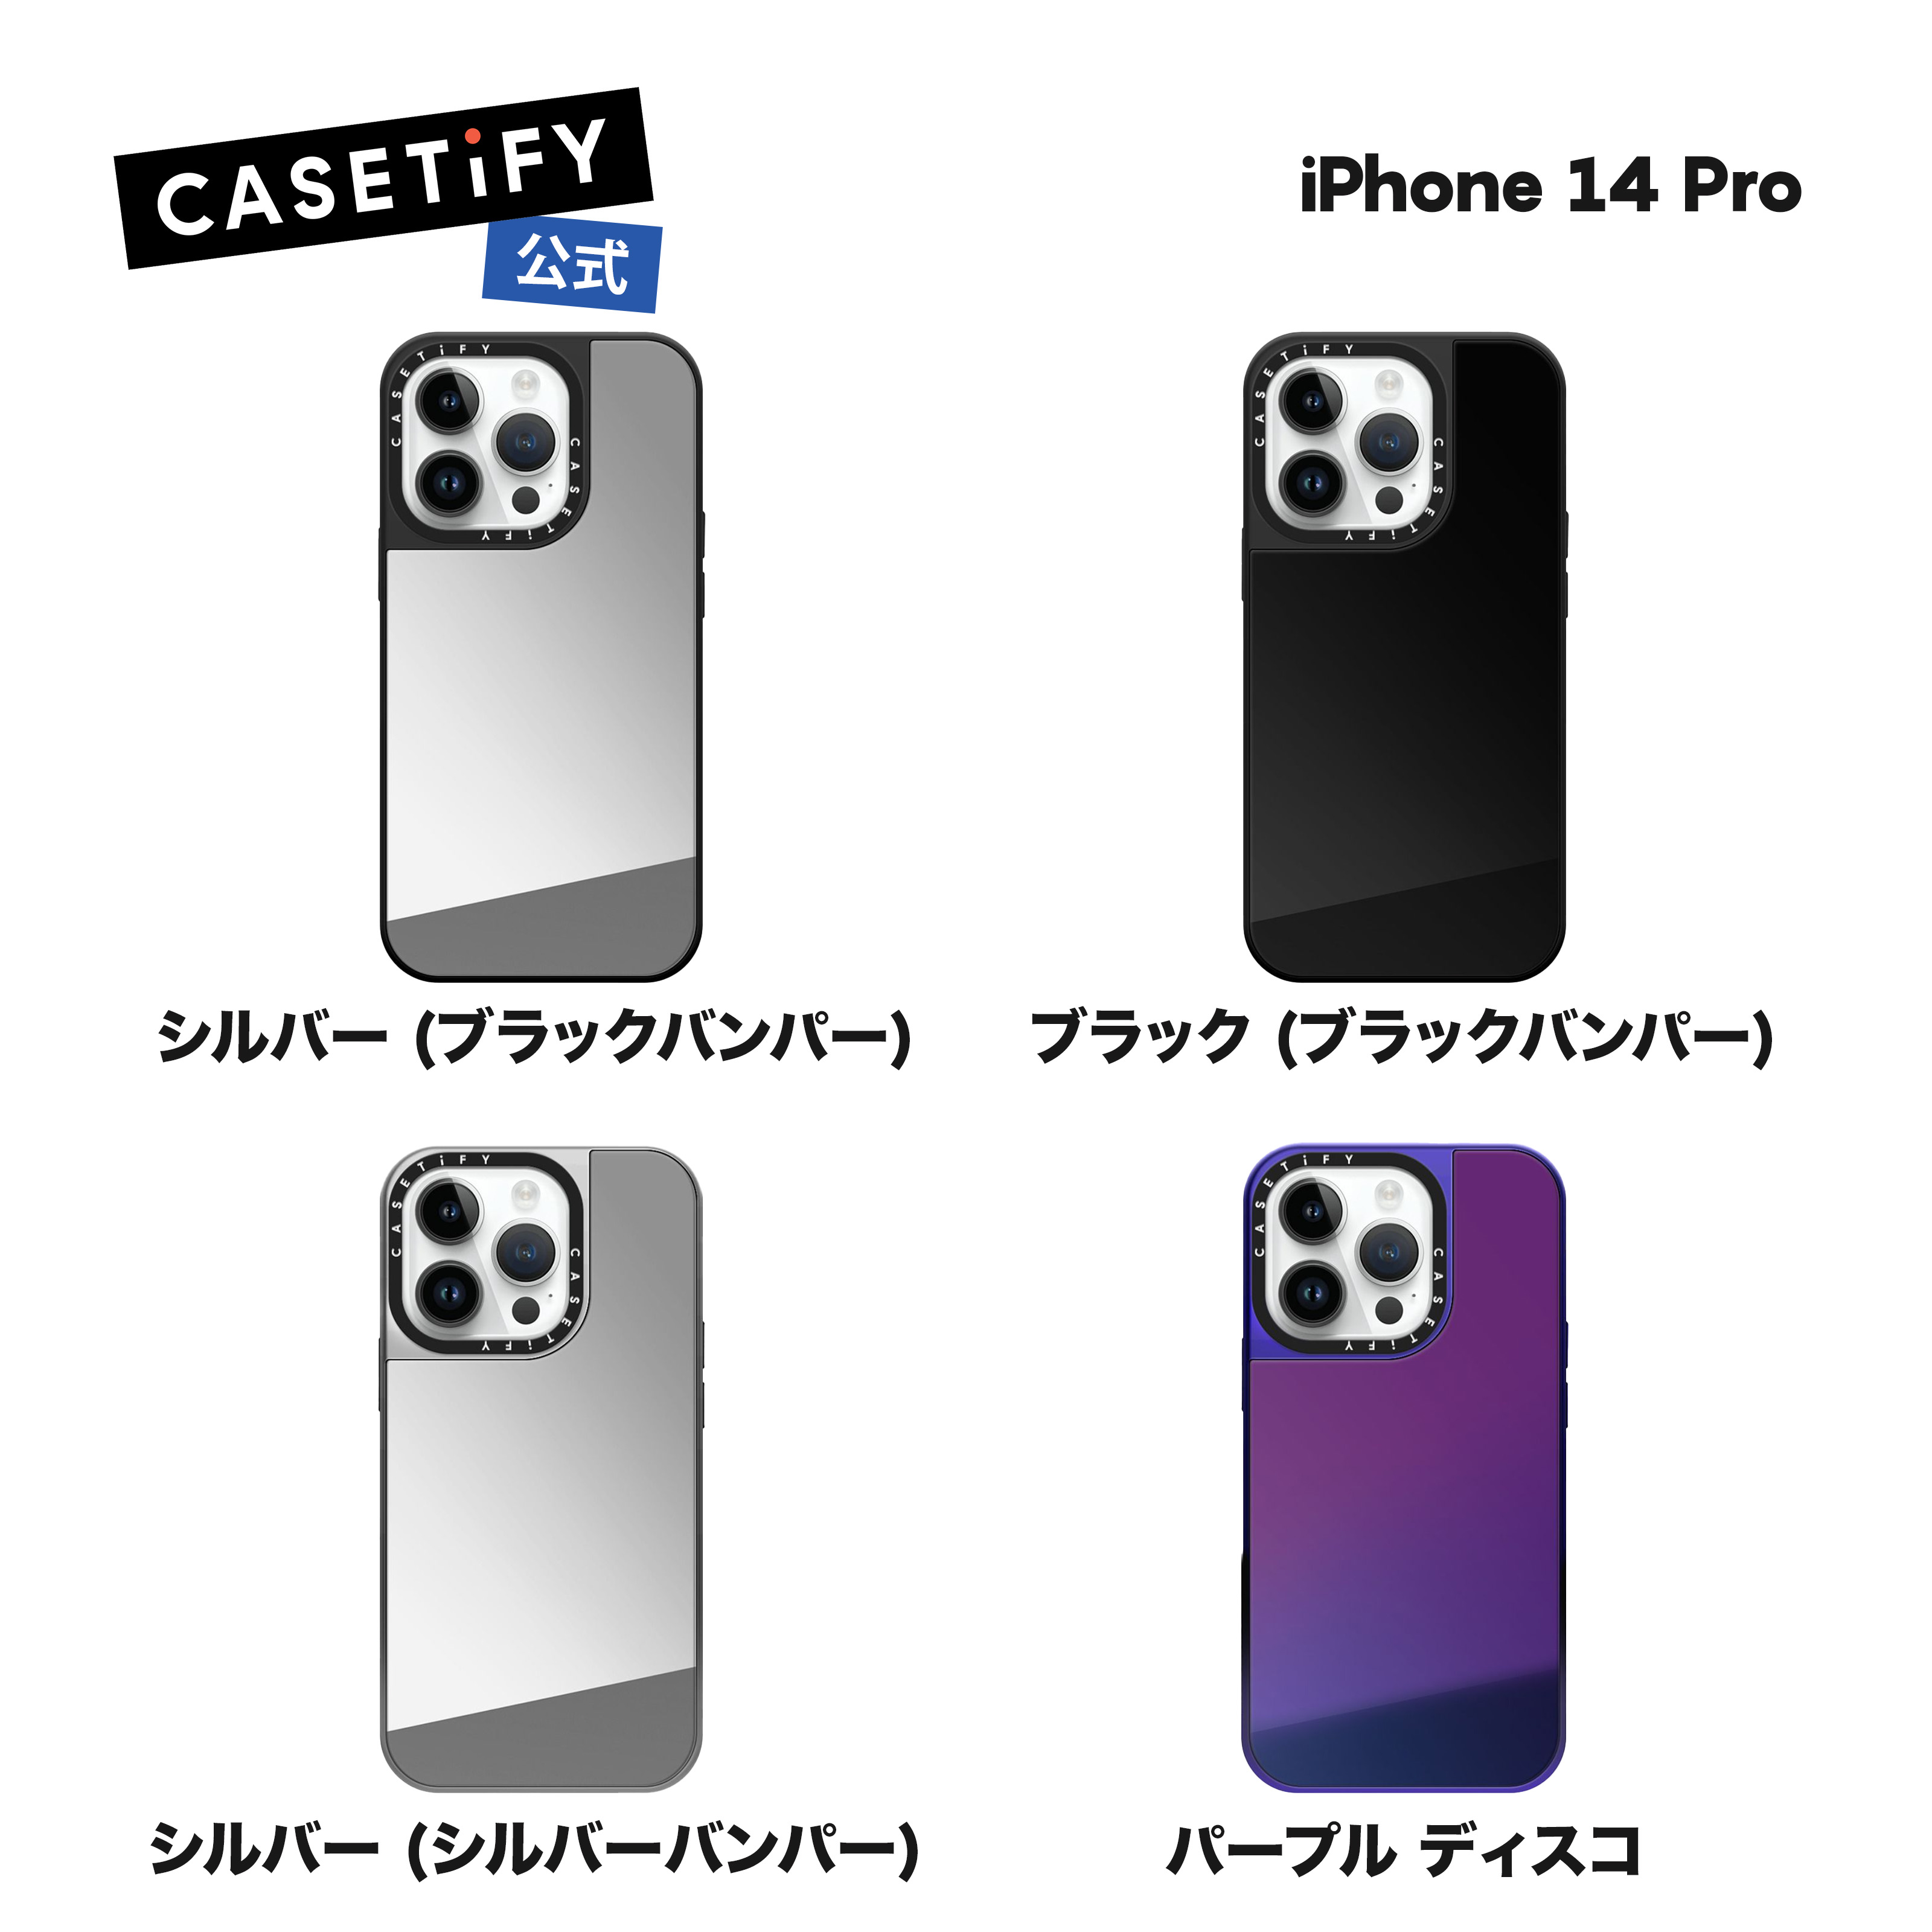 CASETiFY iPhone 14Pro MagSafe 対応 ミラーケース 耐衝撃 保護ケース ワイヤレス充電に対応 MagSafe 対応 シルバー (ブラックバンパー)